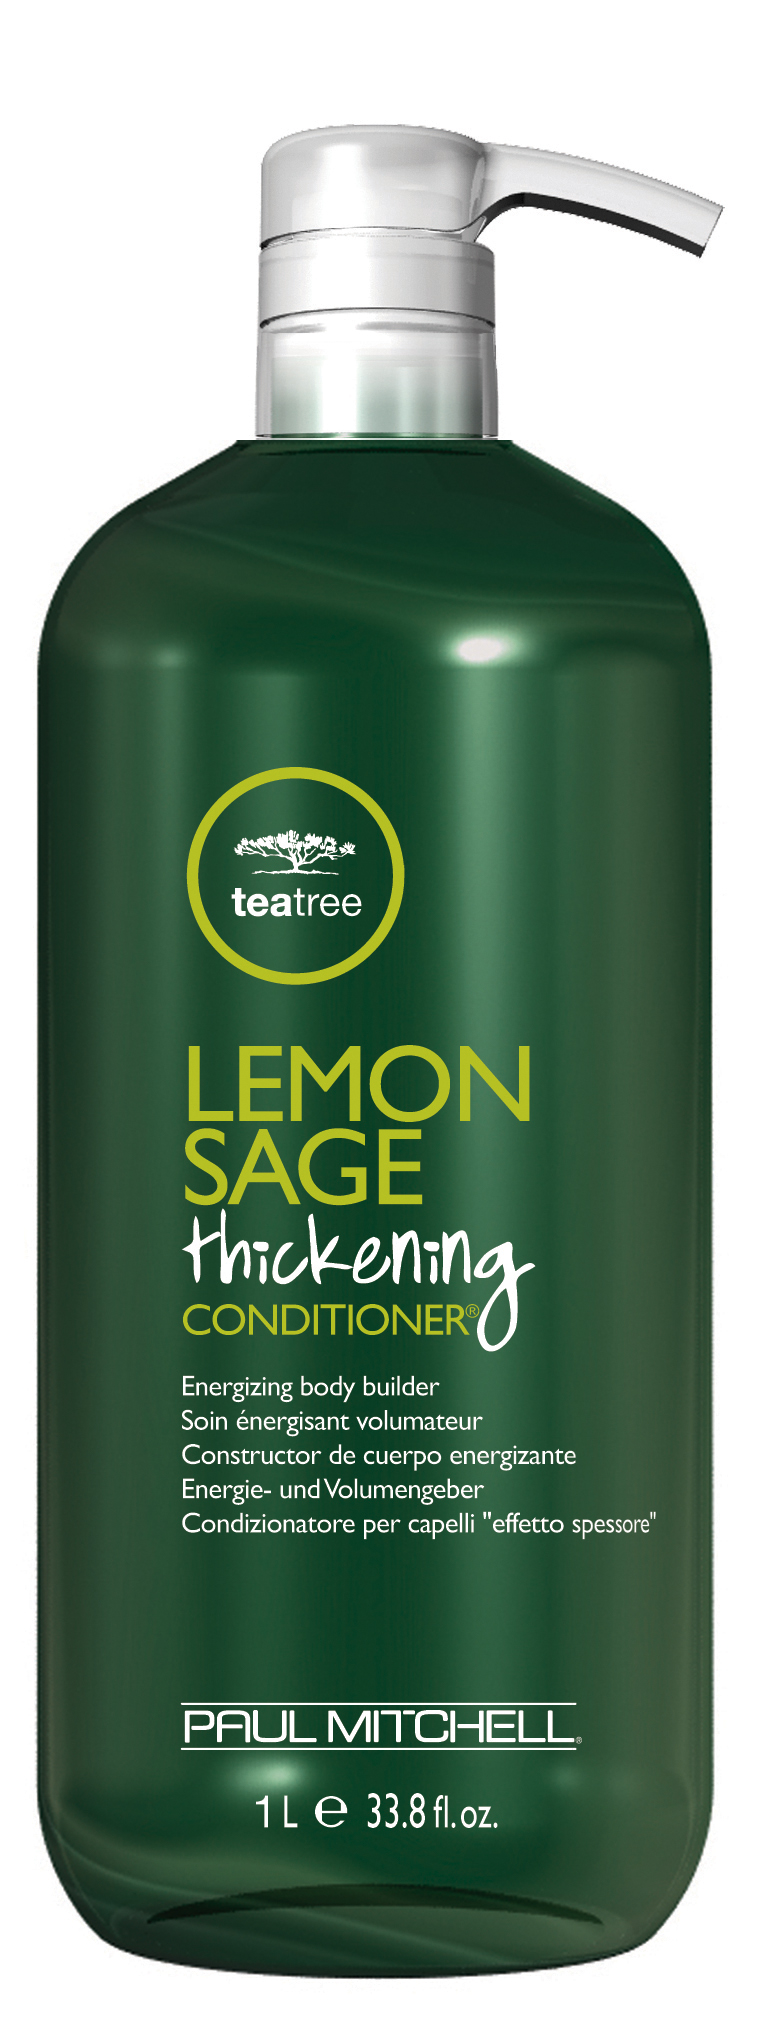 Lemon Sage Thickening Conditioner® obsah (ml): 1000ml